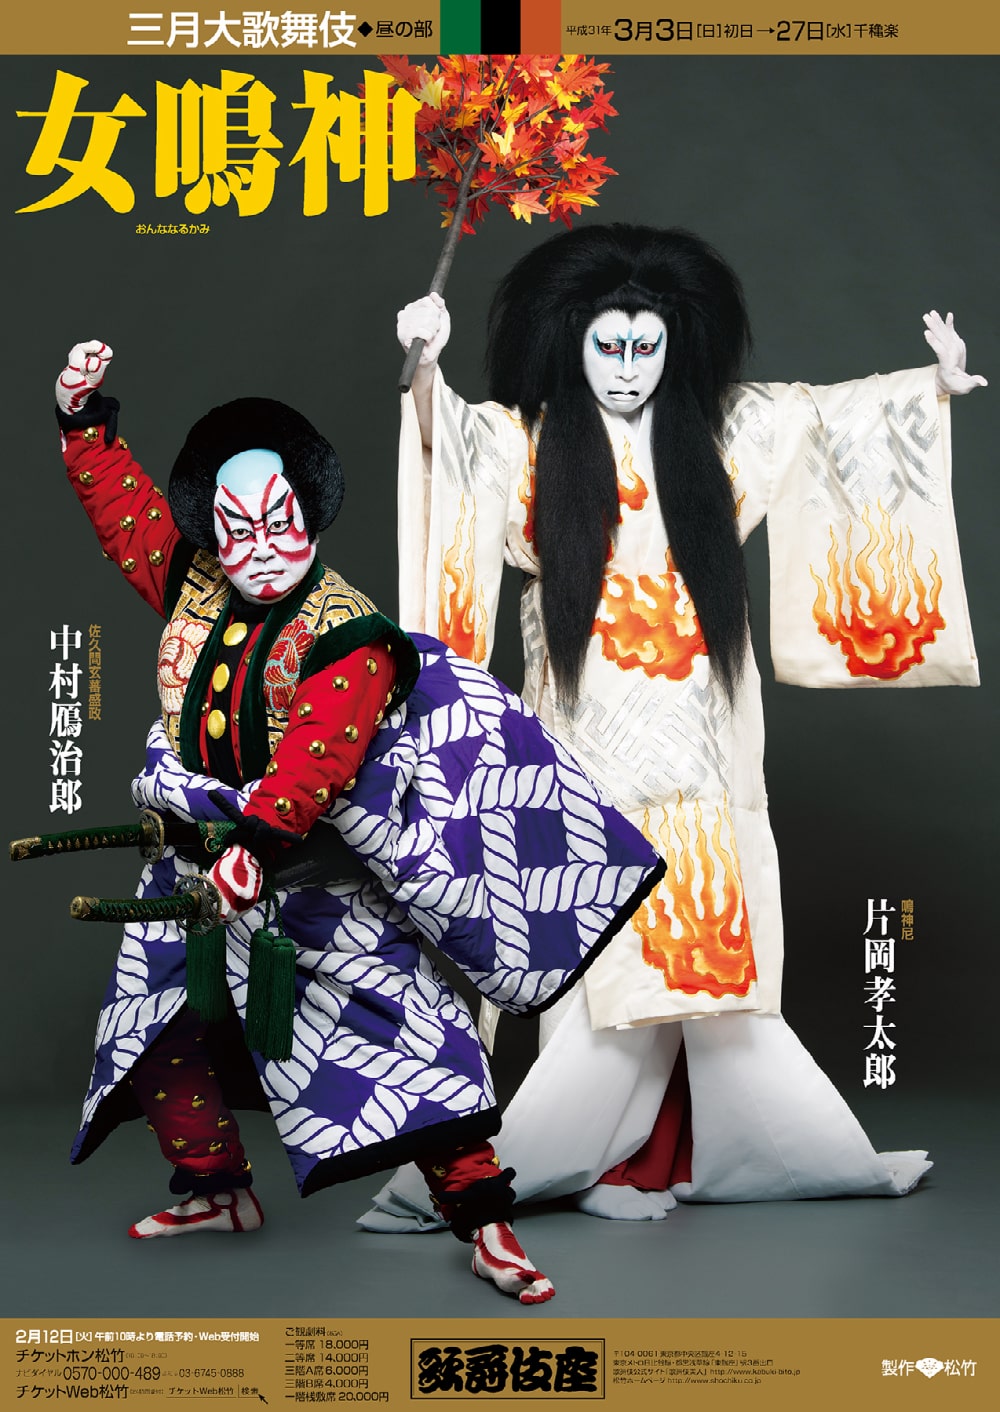 歌舞伎座「三月大歌舞伎」特別ポスター公開